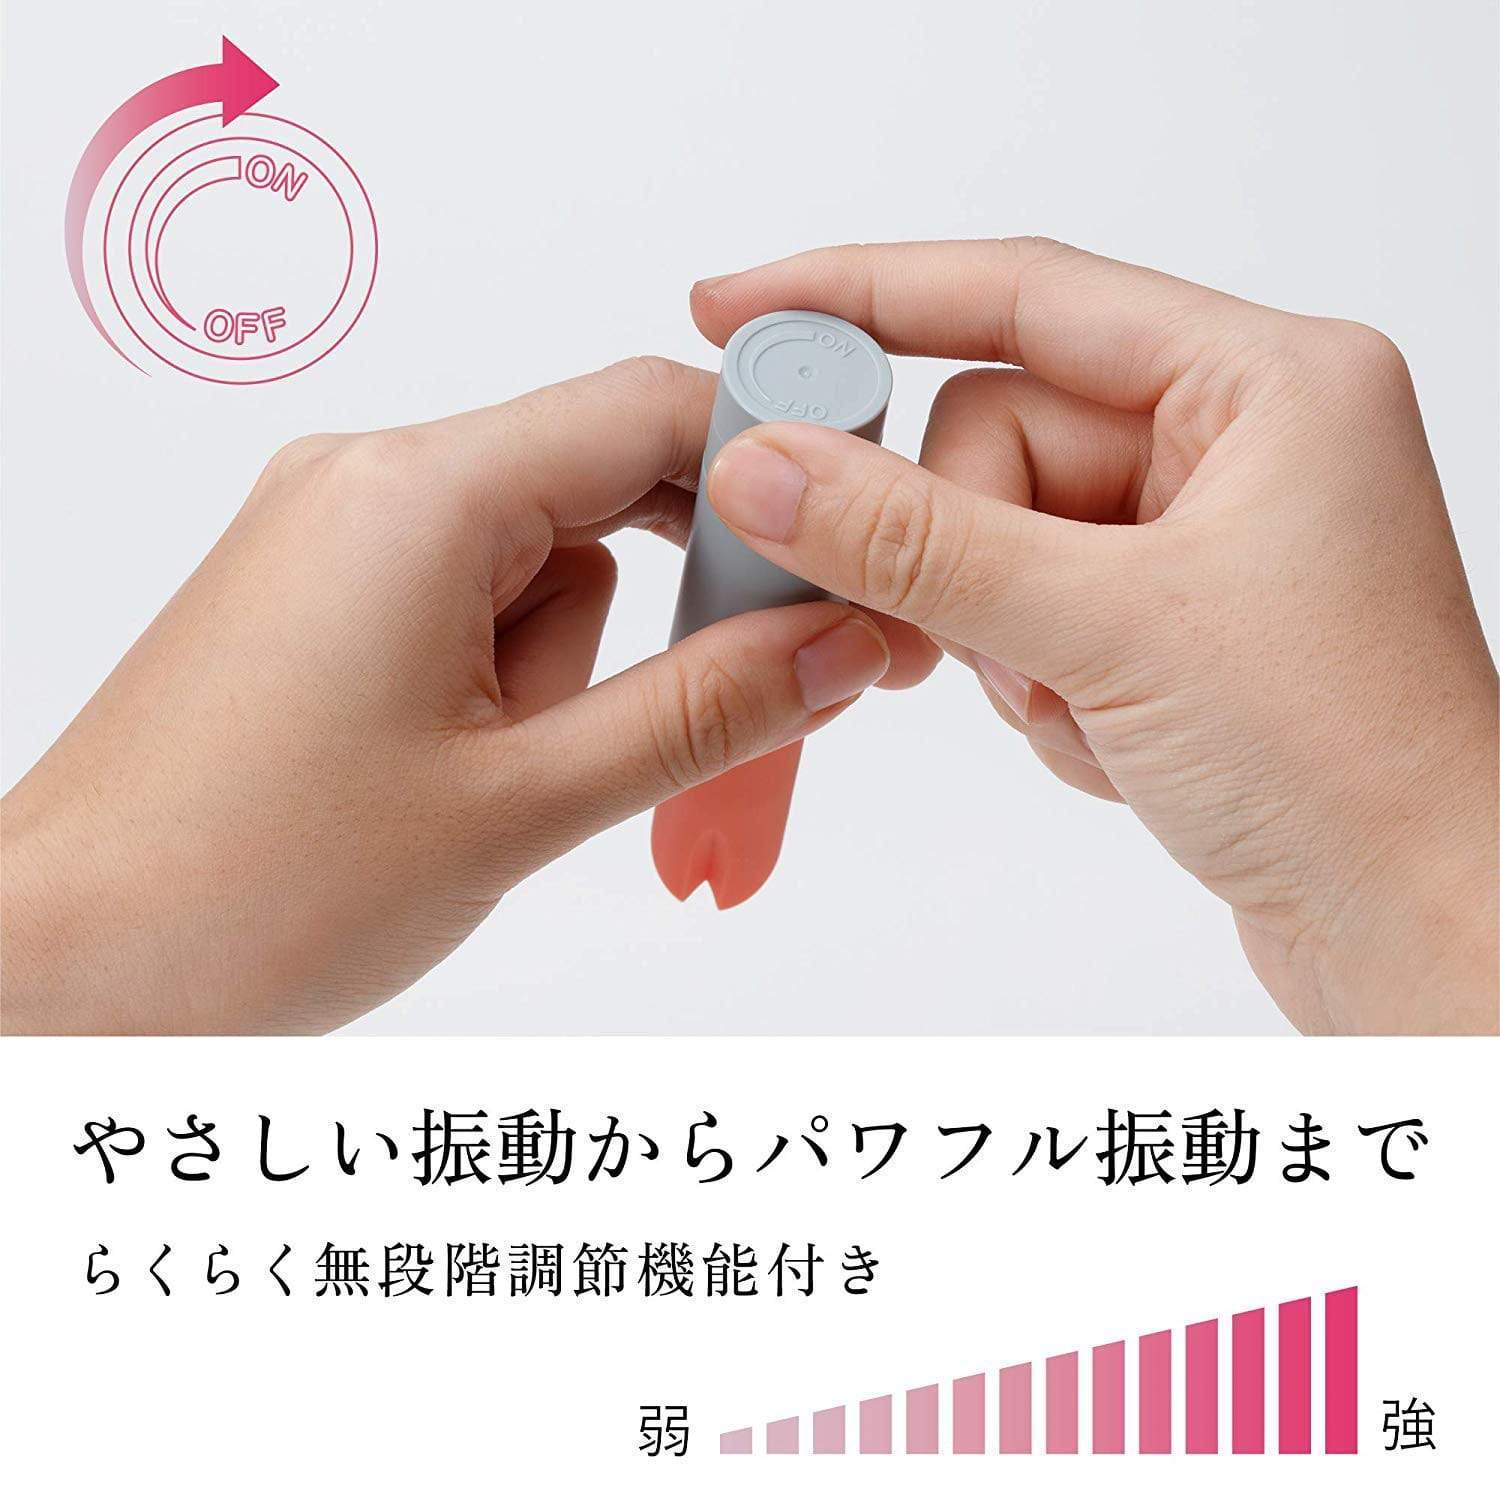 Tenga - Iroha Stick Discreet Vibrator (Black/Pink) -  Discreet Toys  Durio.sg